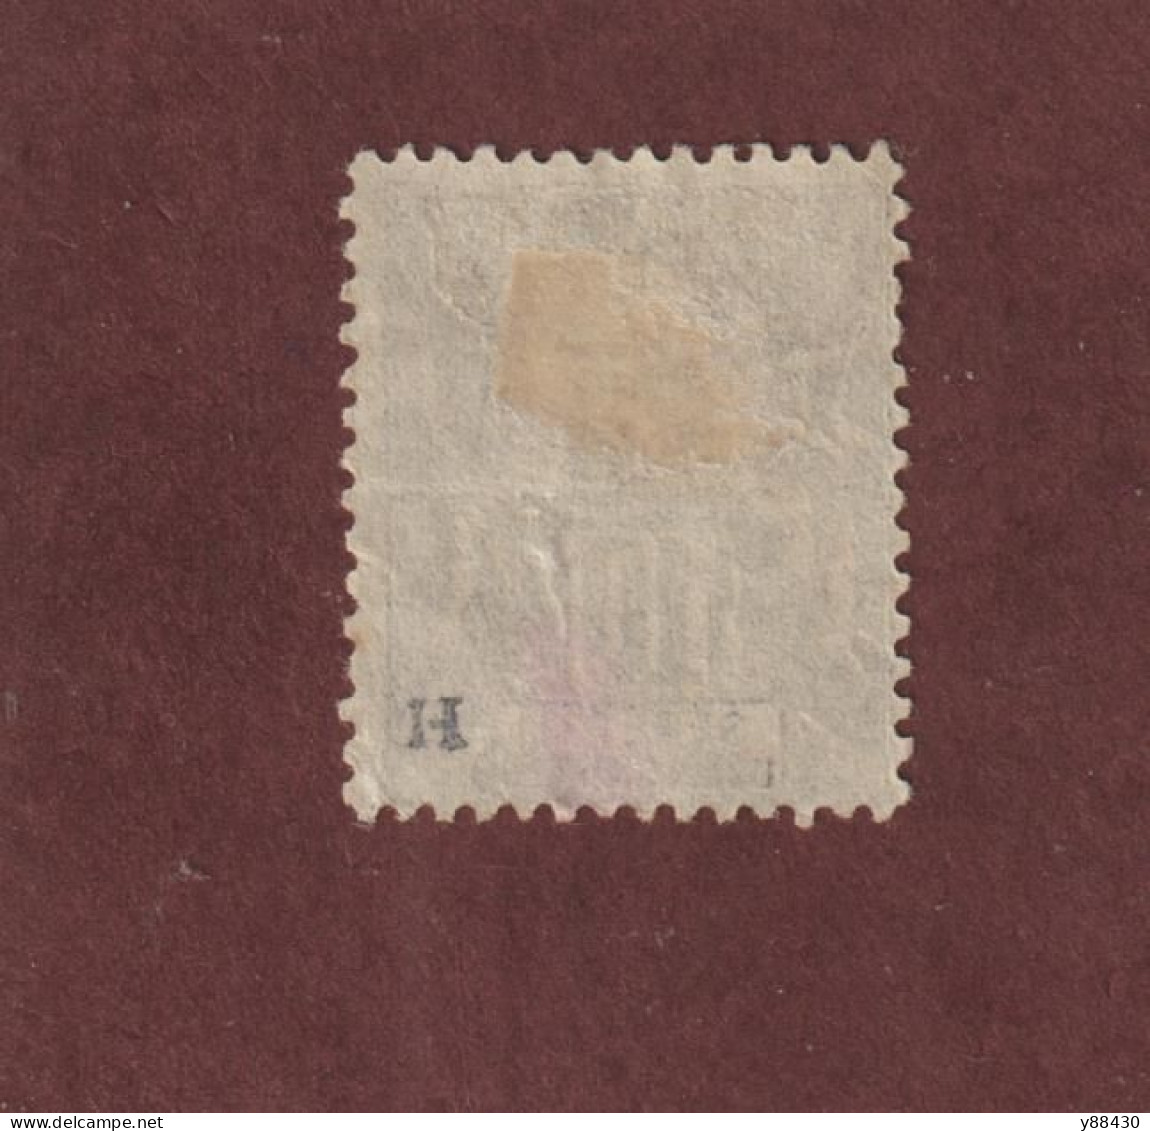 SÉNÉGAL - 12 De 1892/1893  - Oblitéré - Type Colonies - 10c. Noir Sur Lilas  - 2 Scan - Used Stamps